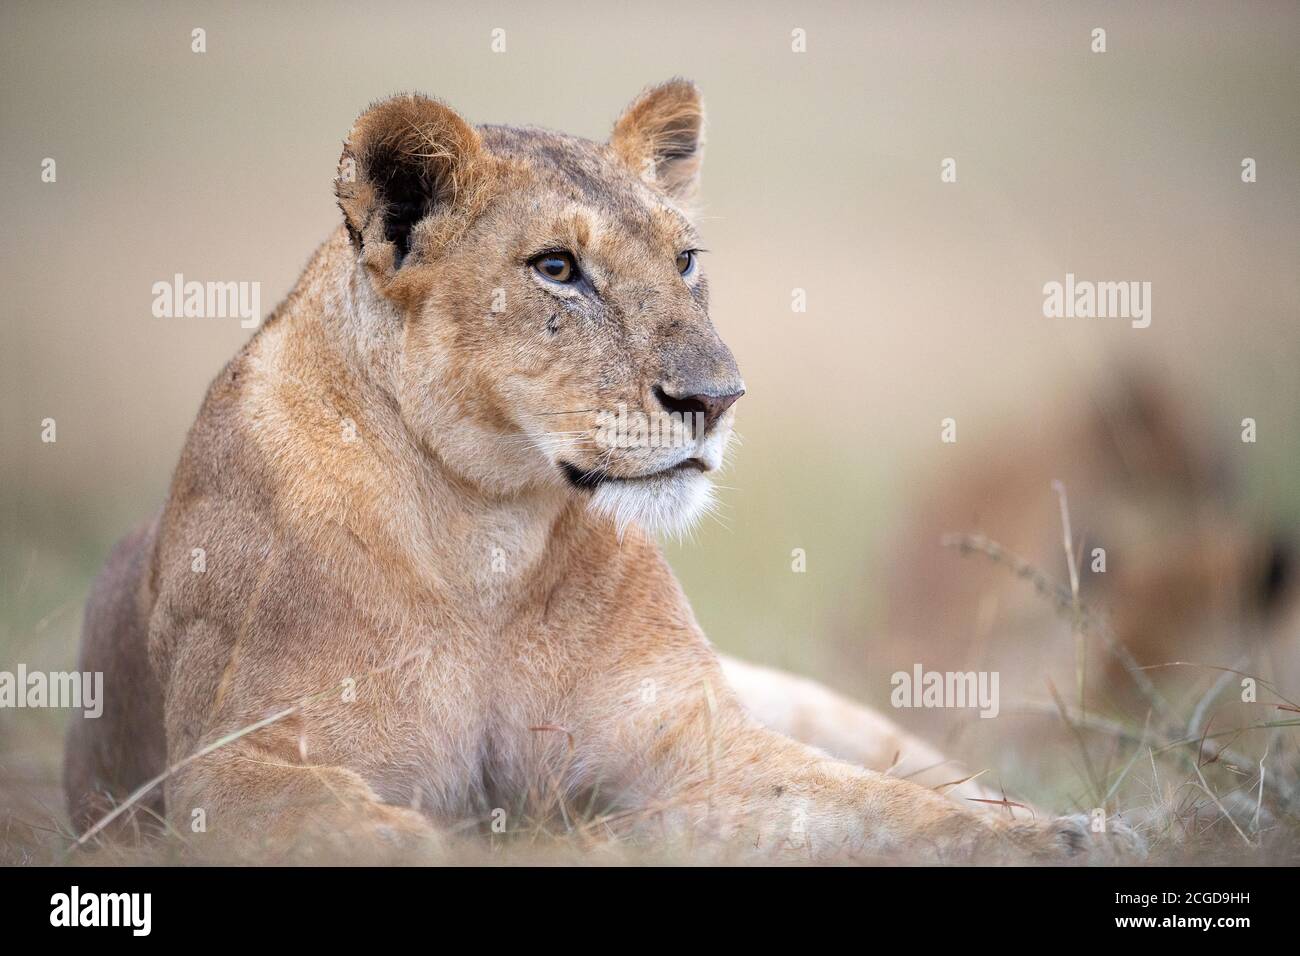 Löwin (Panthera Leo) in Ruhe, Masai Mara, Kenia Stockfoto